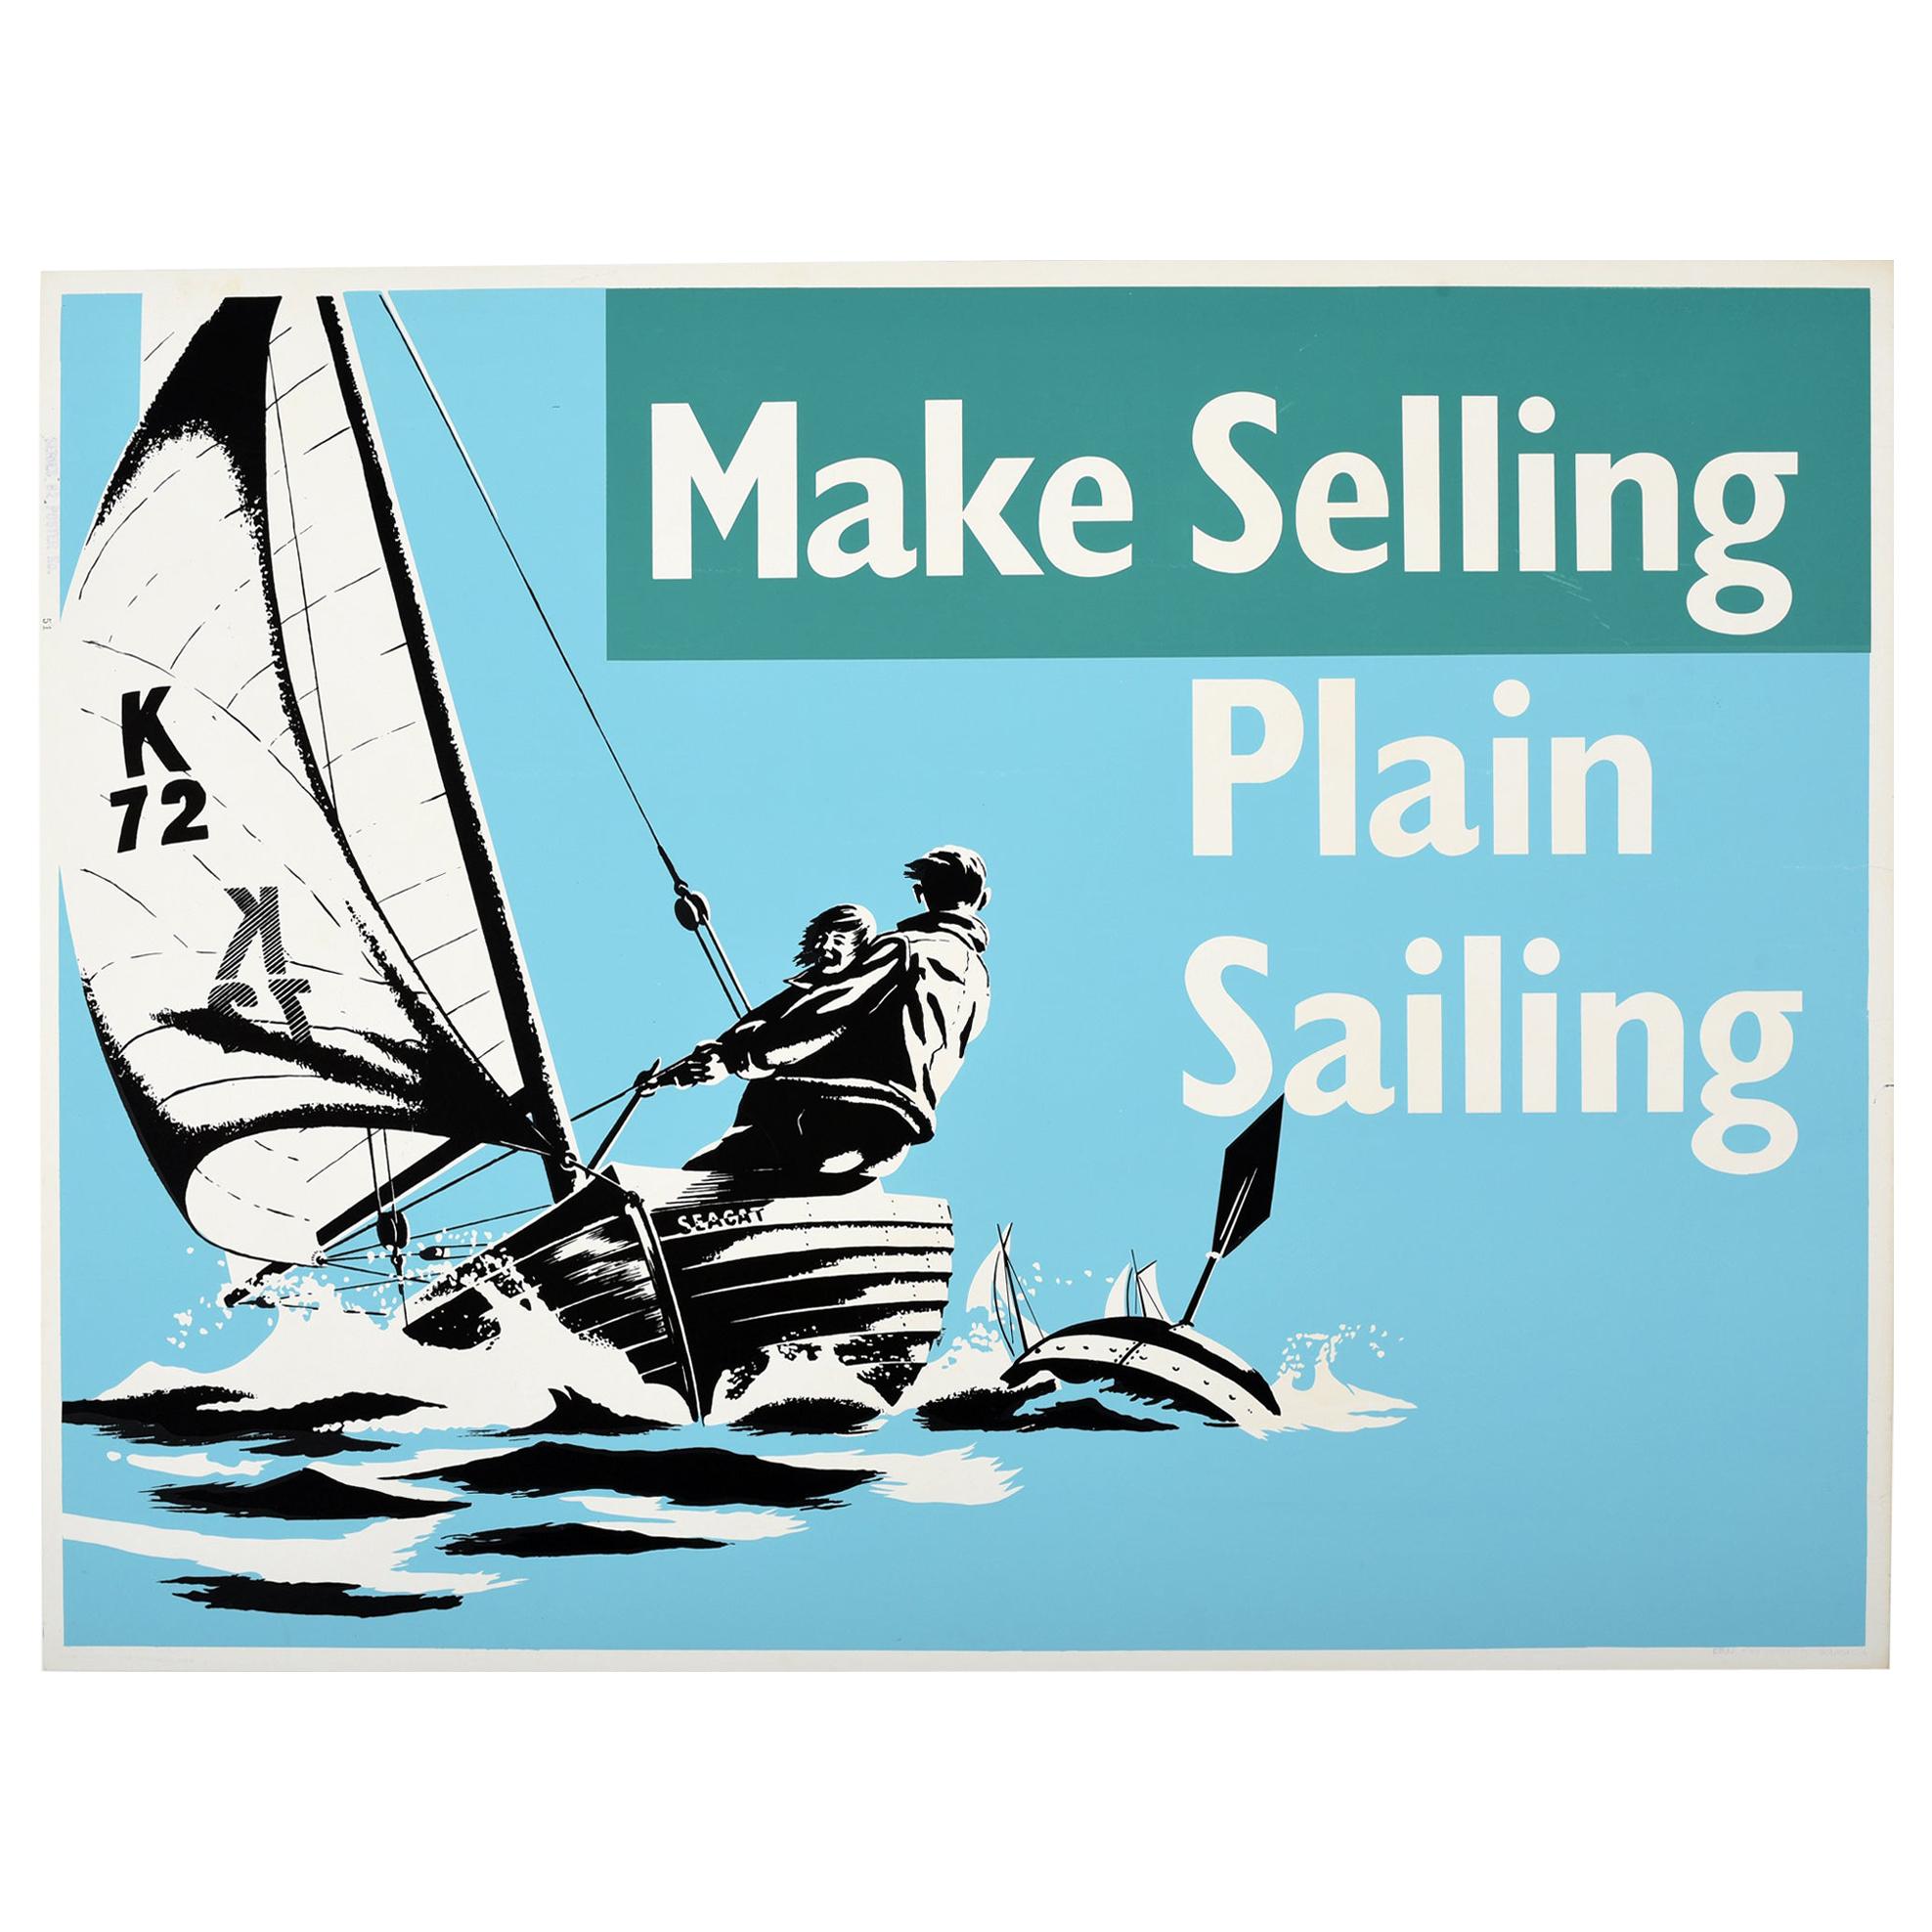 Original Vintage Poster Make Selling Plain Sailing Motivation Sport Theme Design